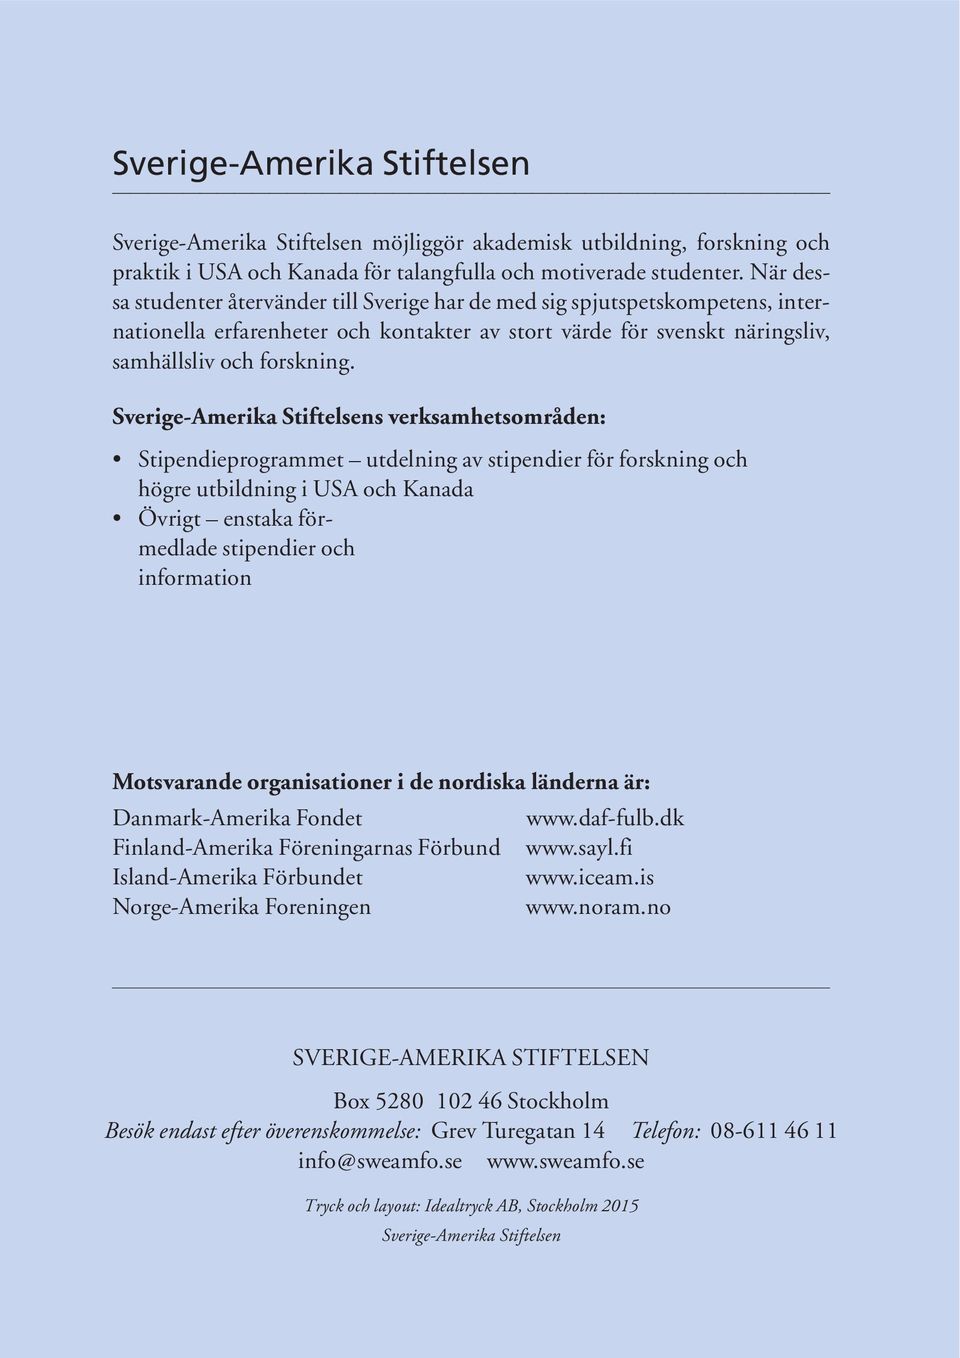 Sverige-Amerika Stiftelsens verksamhetsområden: Stipendieprogrammet utdelning av stipendier för forskning och högre utbildning i USA och Kanada Övrigt enstaka förmedlade stipendier och information